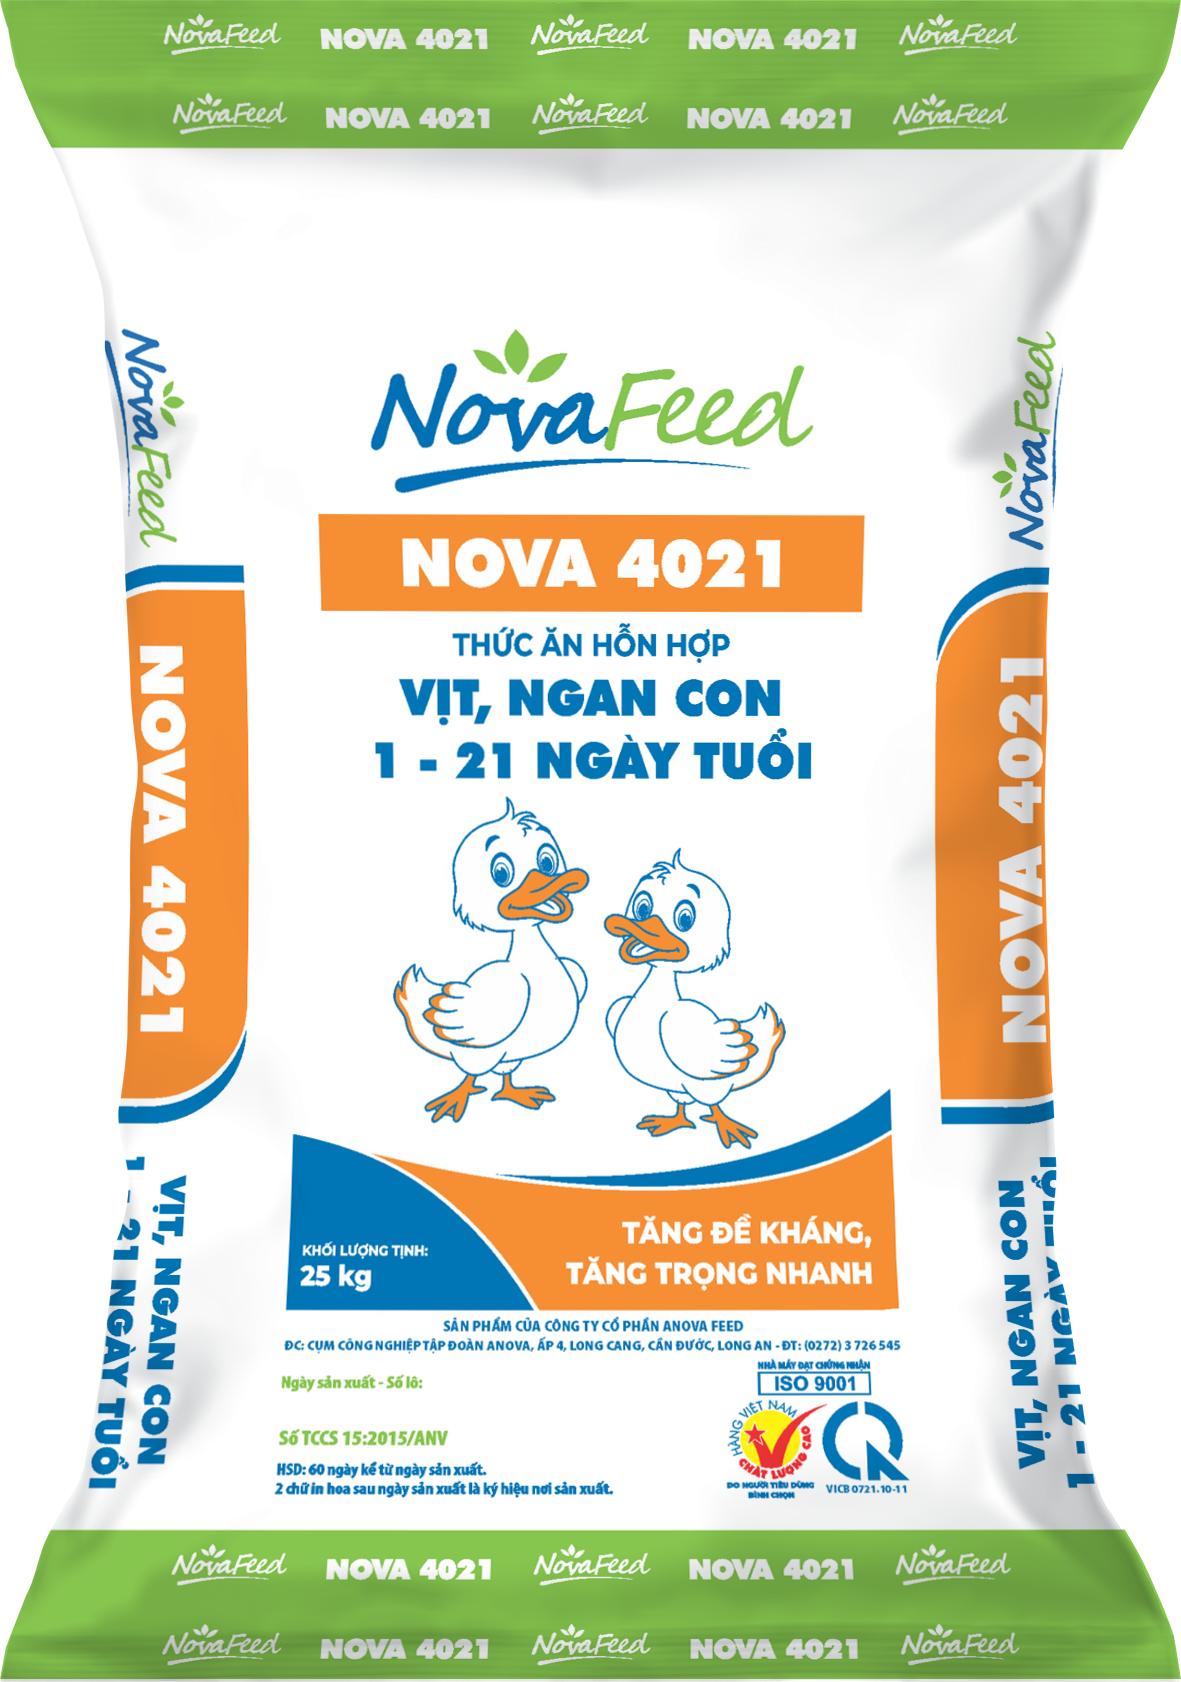 Thức ăn hỗn hợp dành VỊT, NGAN CON 1 - 21 ngày tuổi NOVA 4021